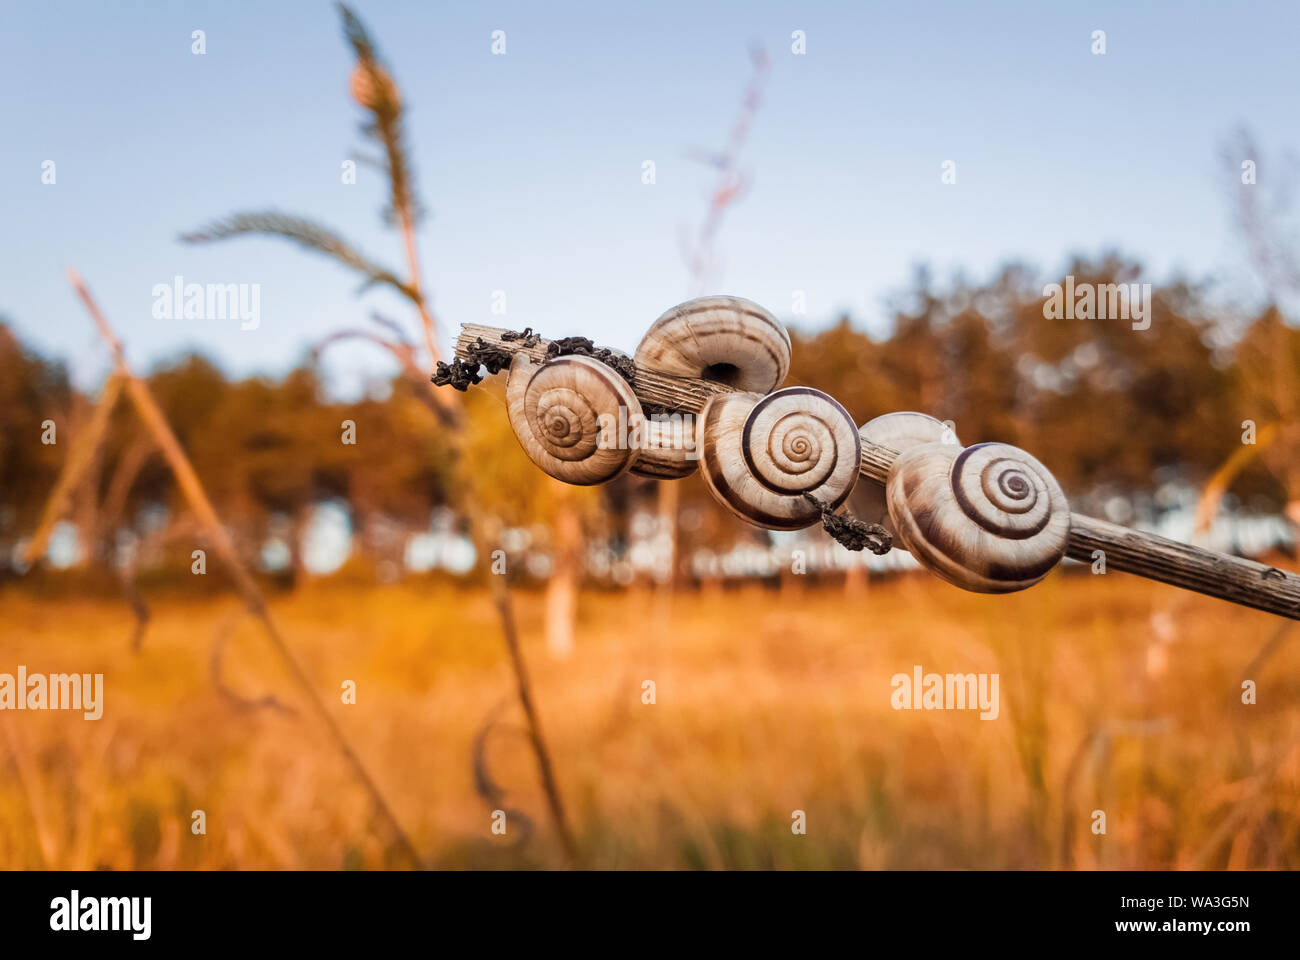 Beaucoup de coquilles d'escargots sur une plante sèche dans le champ près de la forêt. Scène d'automne campagne, jaune et hay meadow beaucoup de vigne escargots (Cernuella virg Banque D'Images